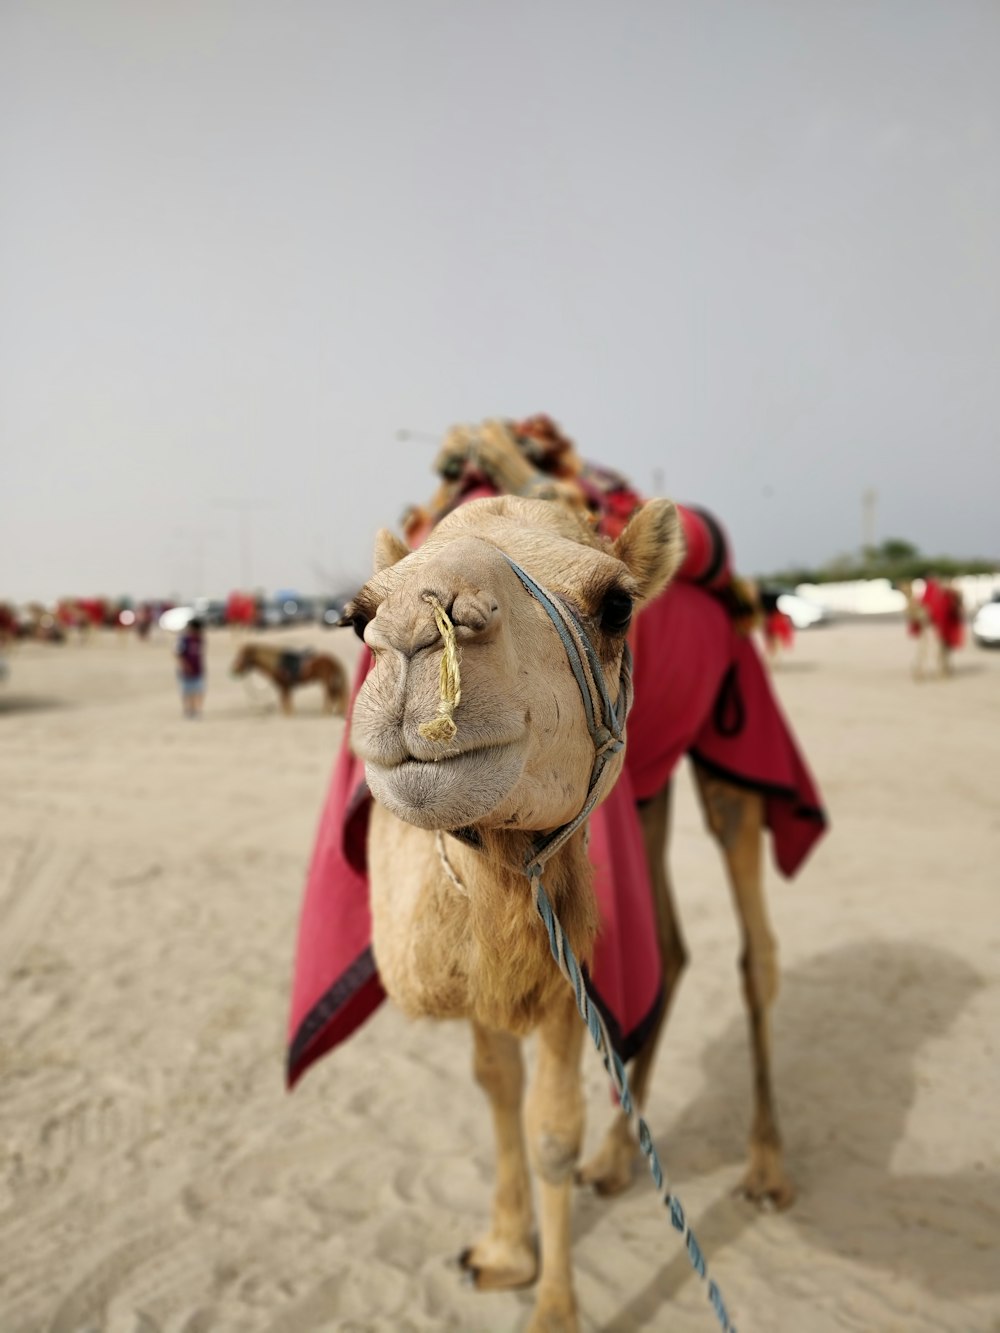 brown camel at a desert